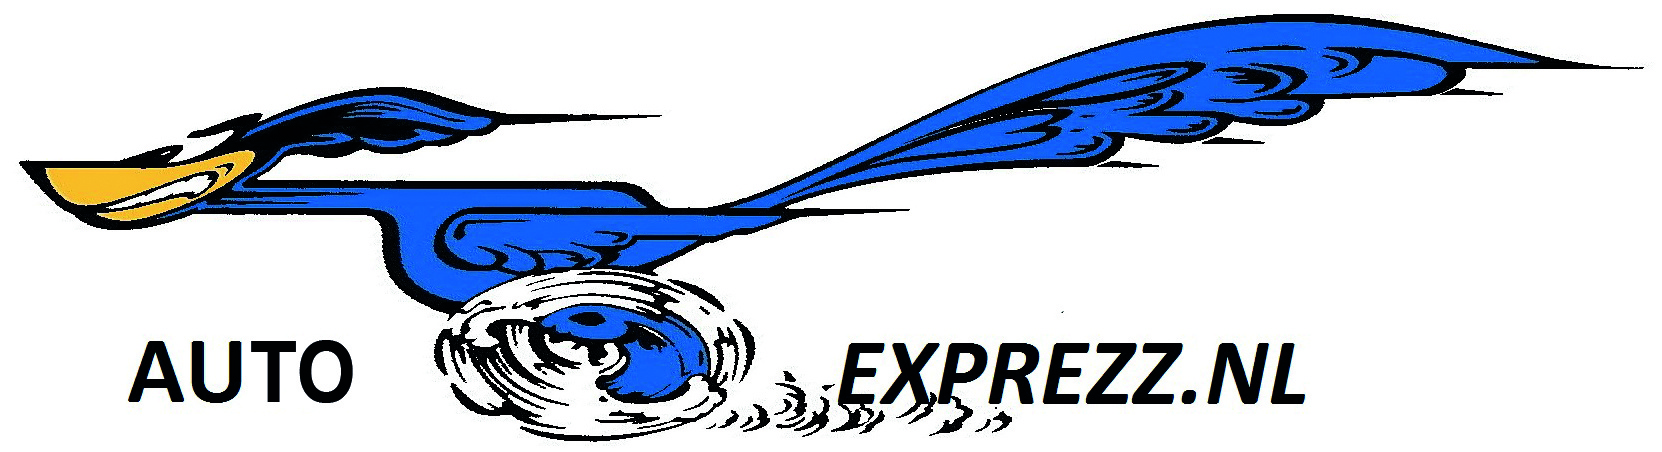 Auto Exprezz logo